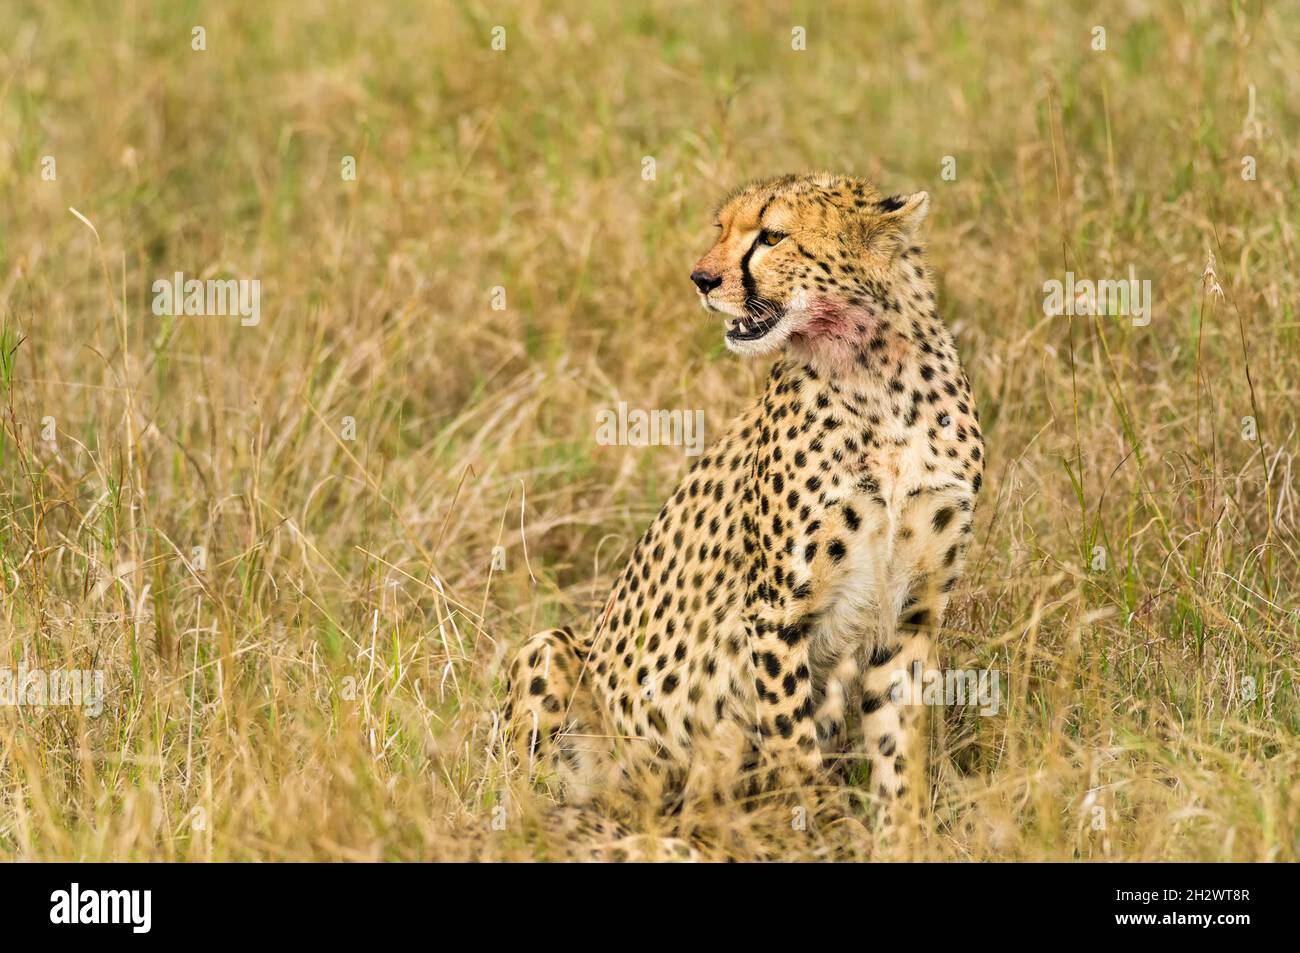 Cheetah (Acinonyx jubatus) resting in tall grass, Masai Mara, Kenya Stock Photo